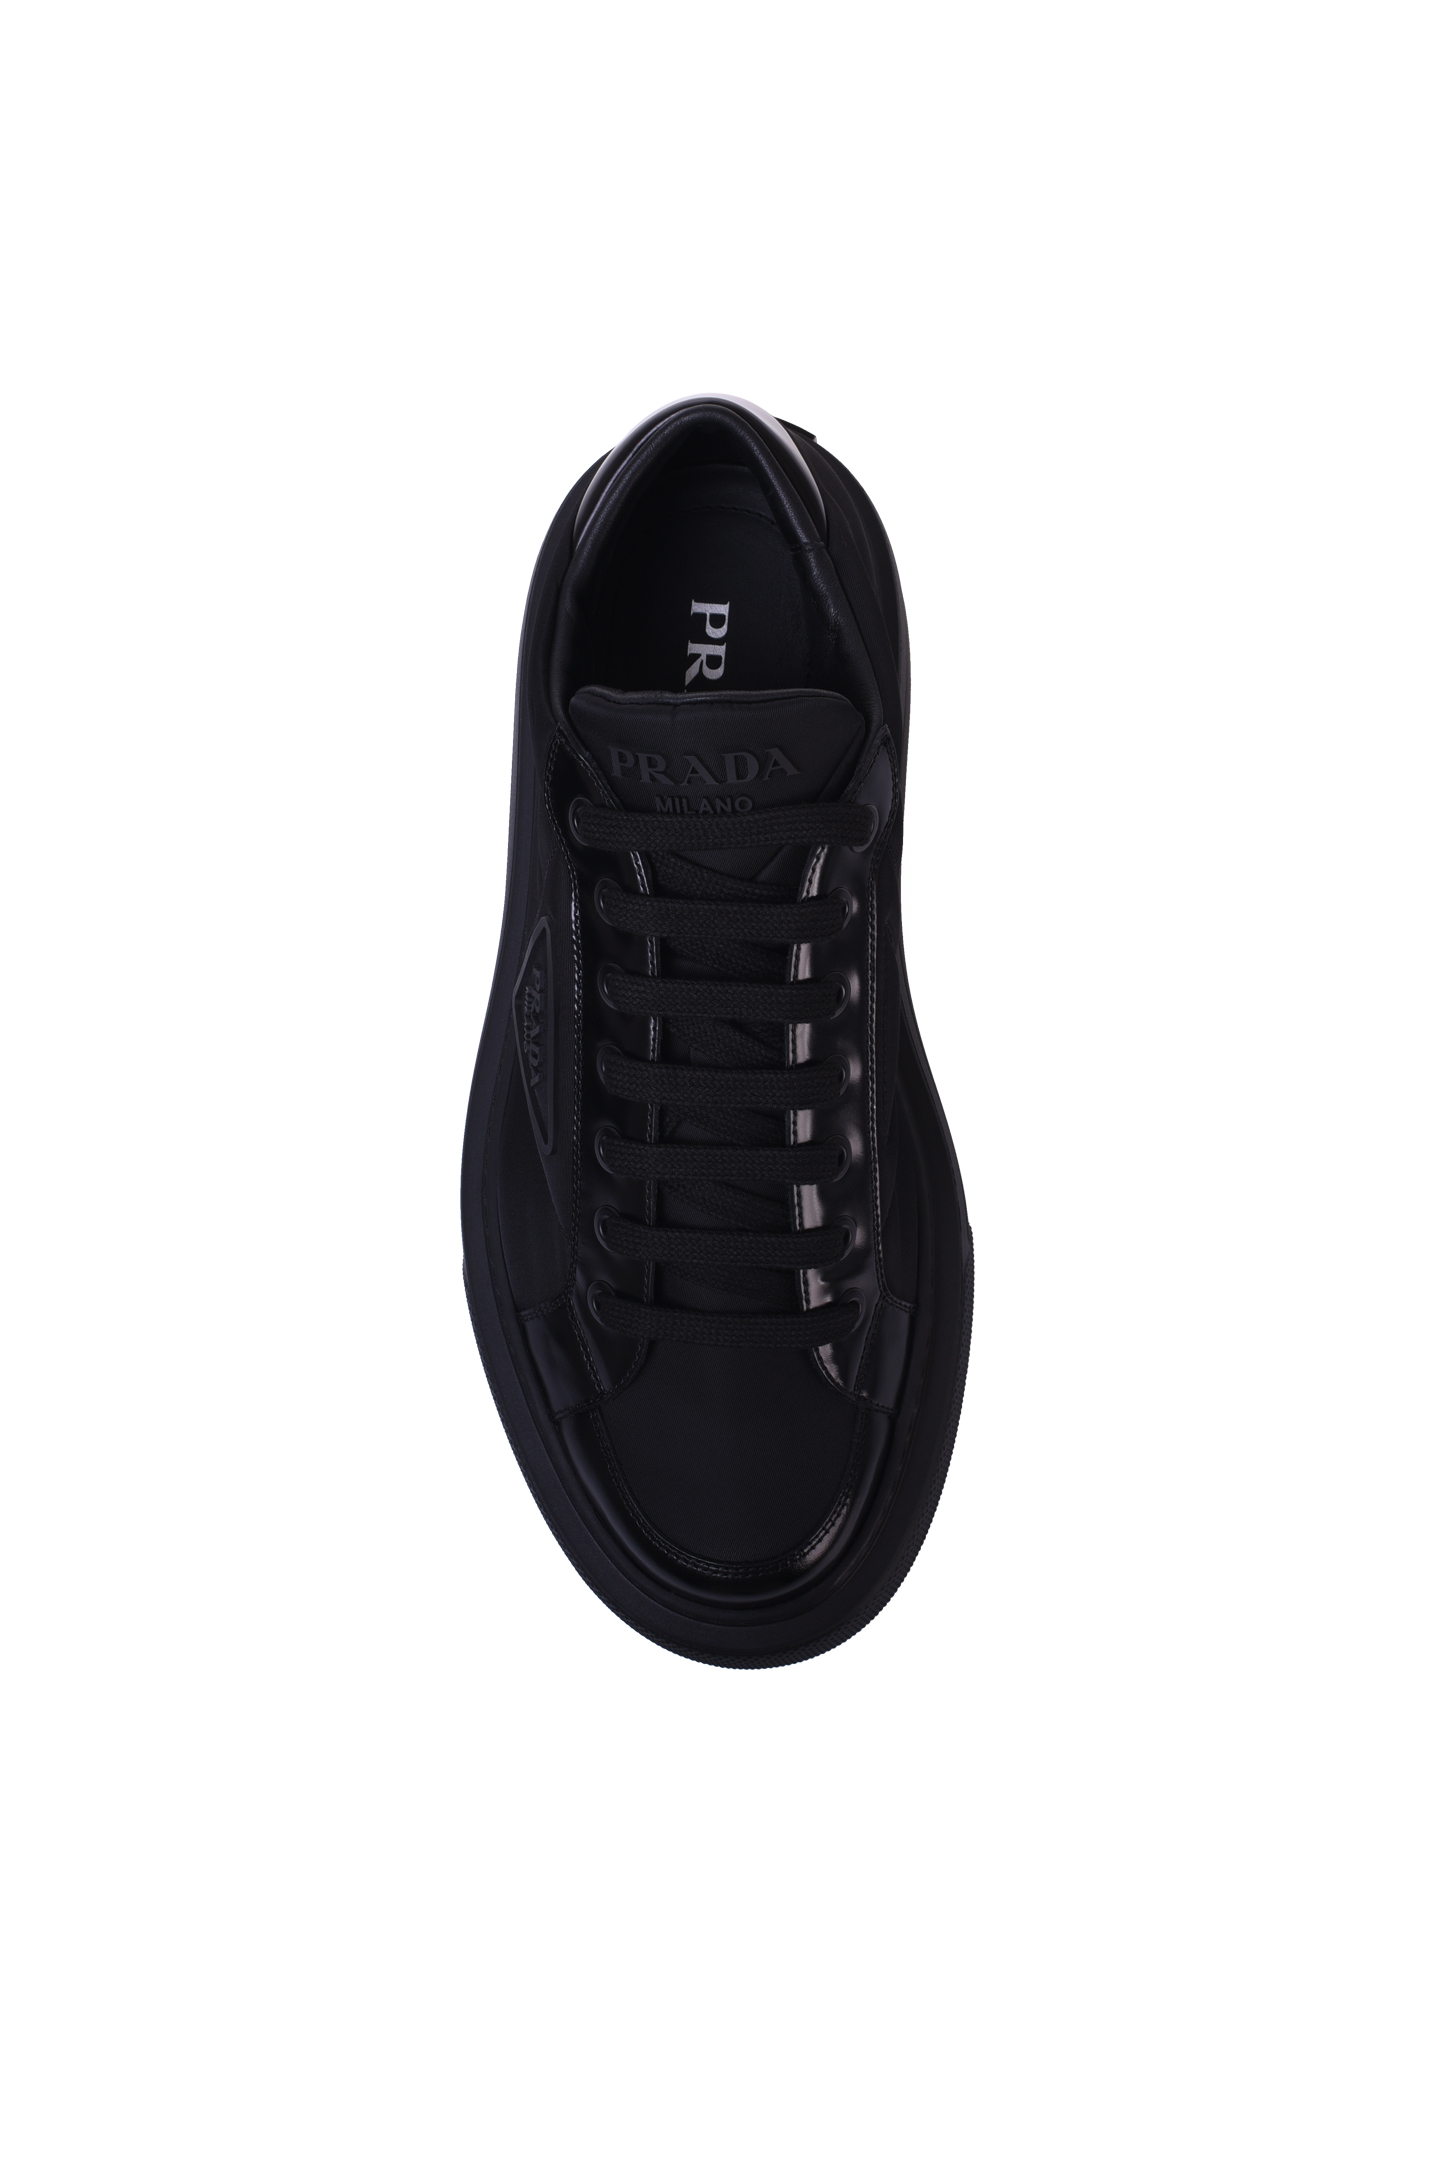 Ботинки PRADA 2EG376 3LF5, цвет: Черный, Мужской